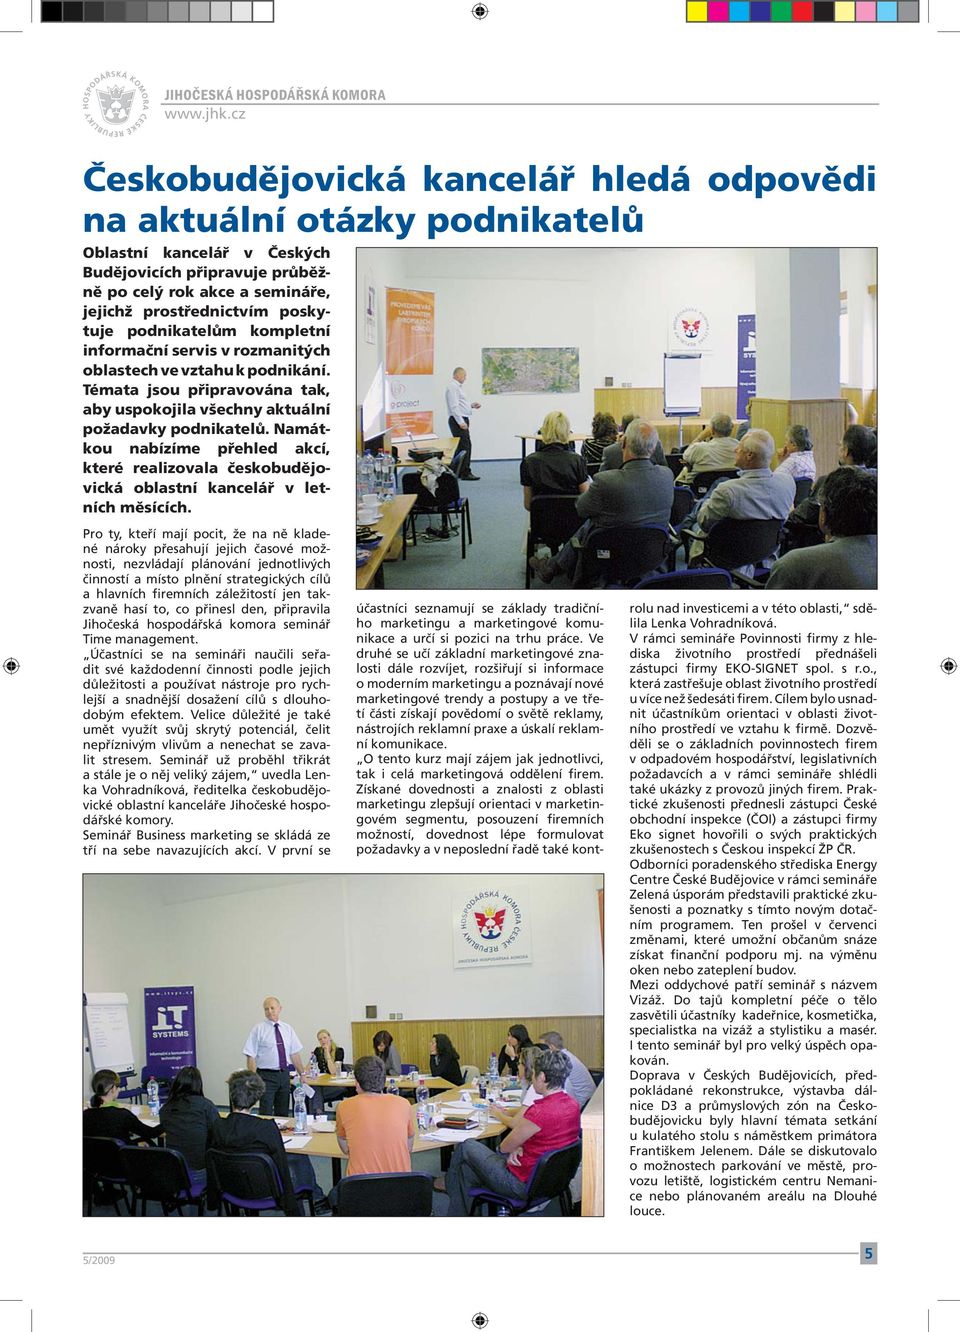 Namátkou nabízíme přehled akcí, které realizovala českobudějovická oblastní kancelář v letních měsících.